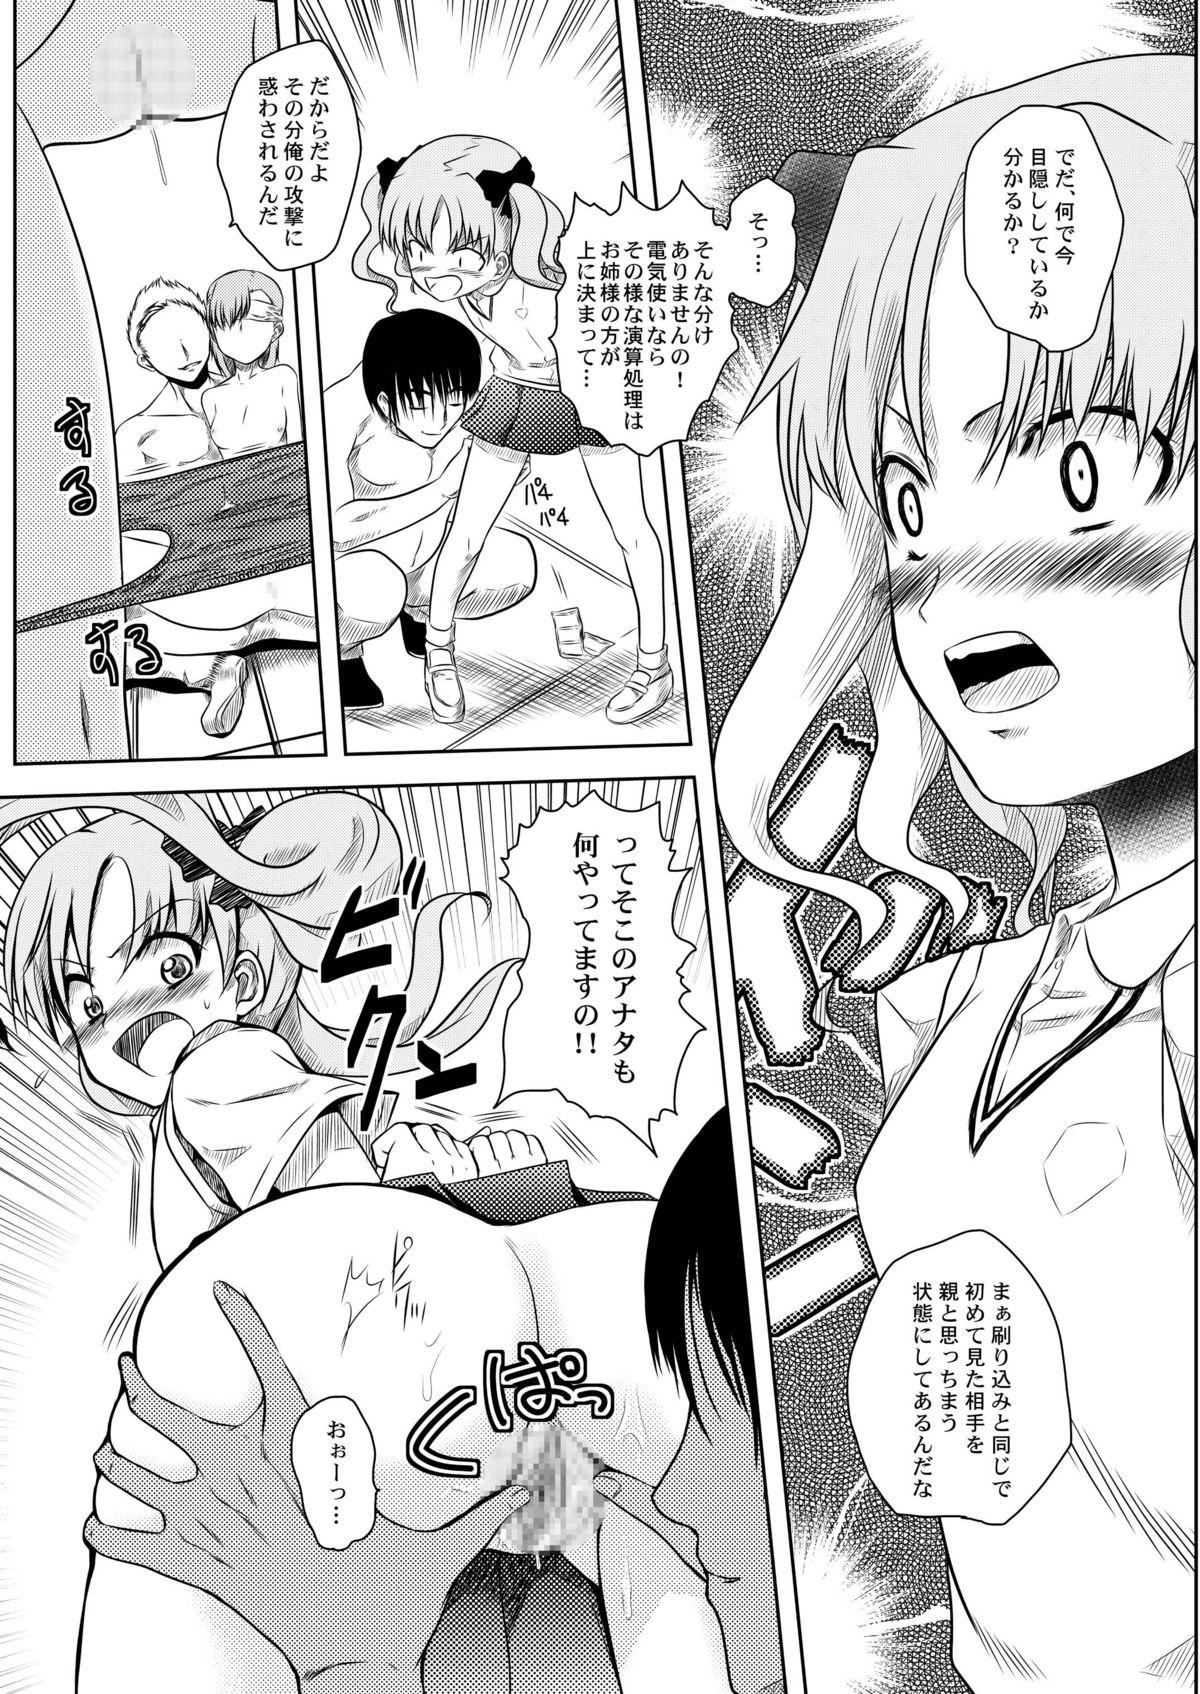 Lima Toaru Tokumei Kibou ni Goyoujin - Toaru kagaku no railgun Threesome - Page 10